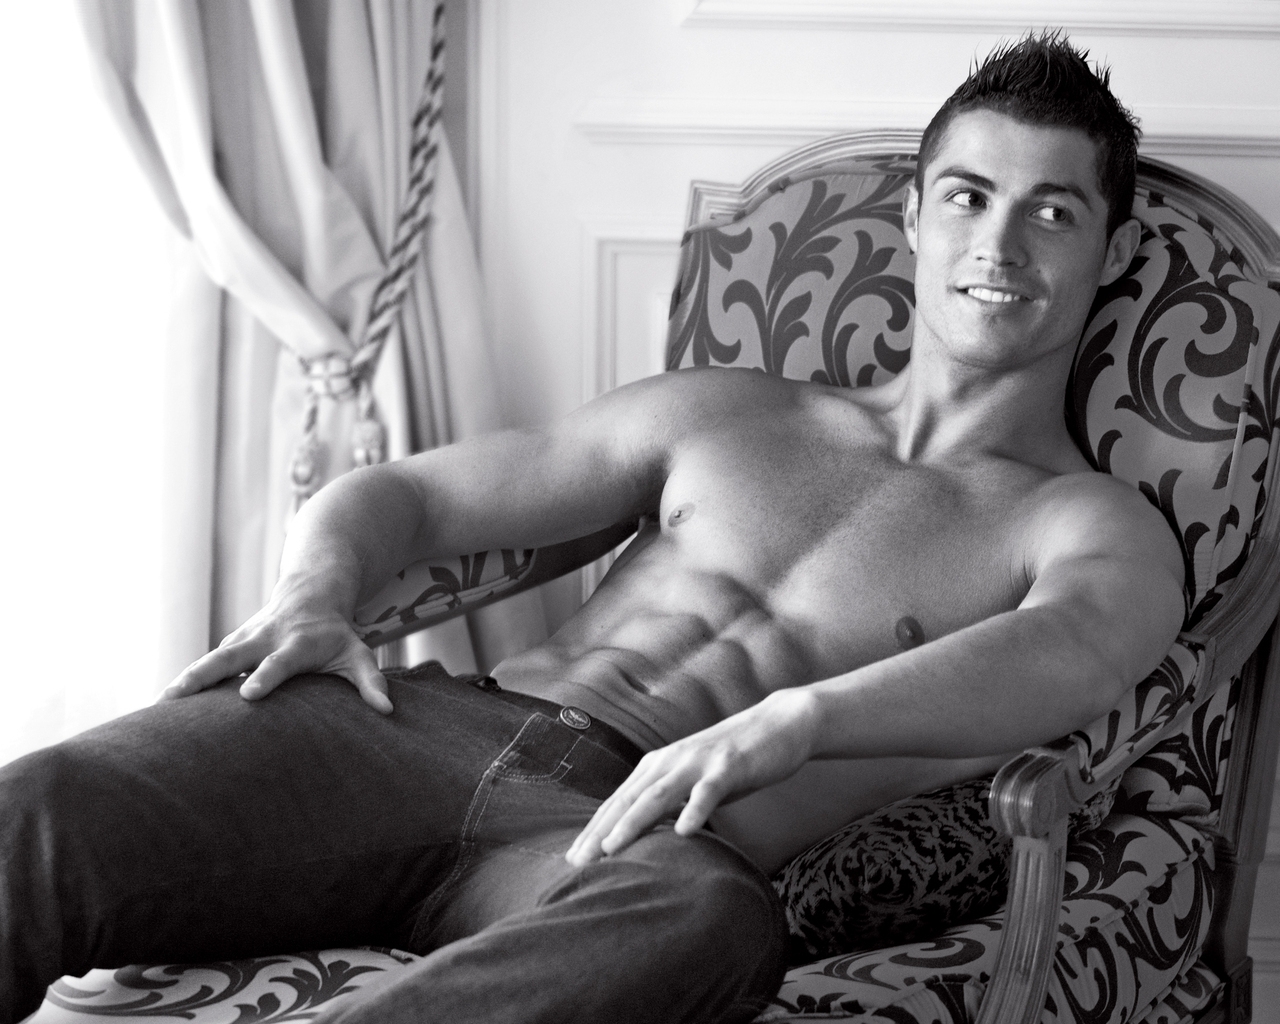 Cool Cristiano Ronaldo for 1280 x 1024 resolution